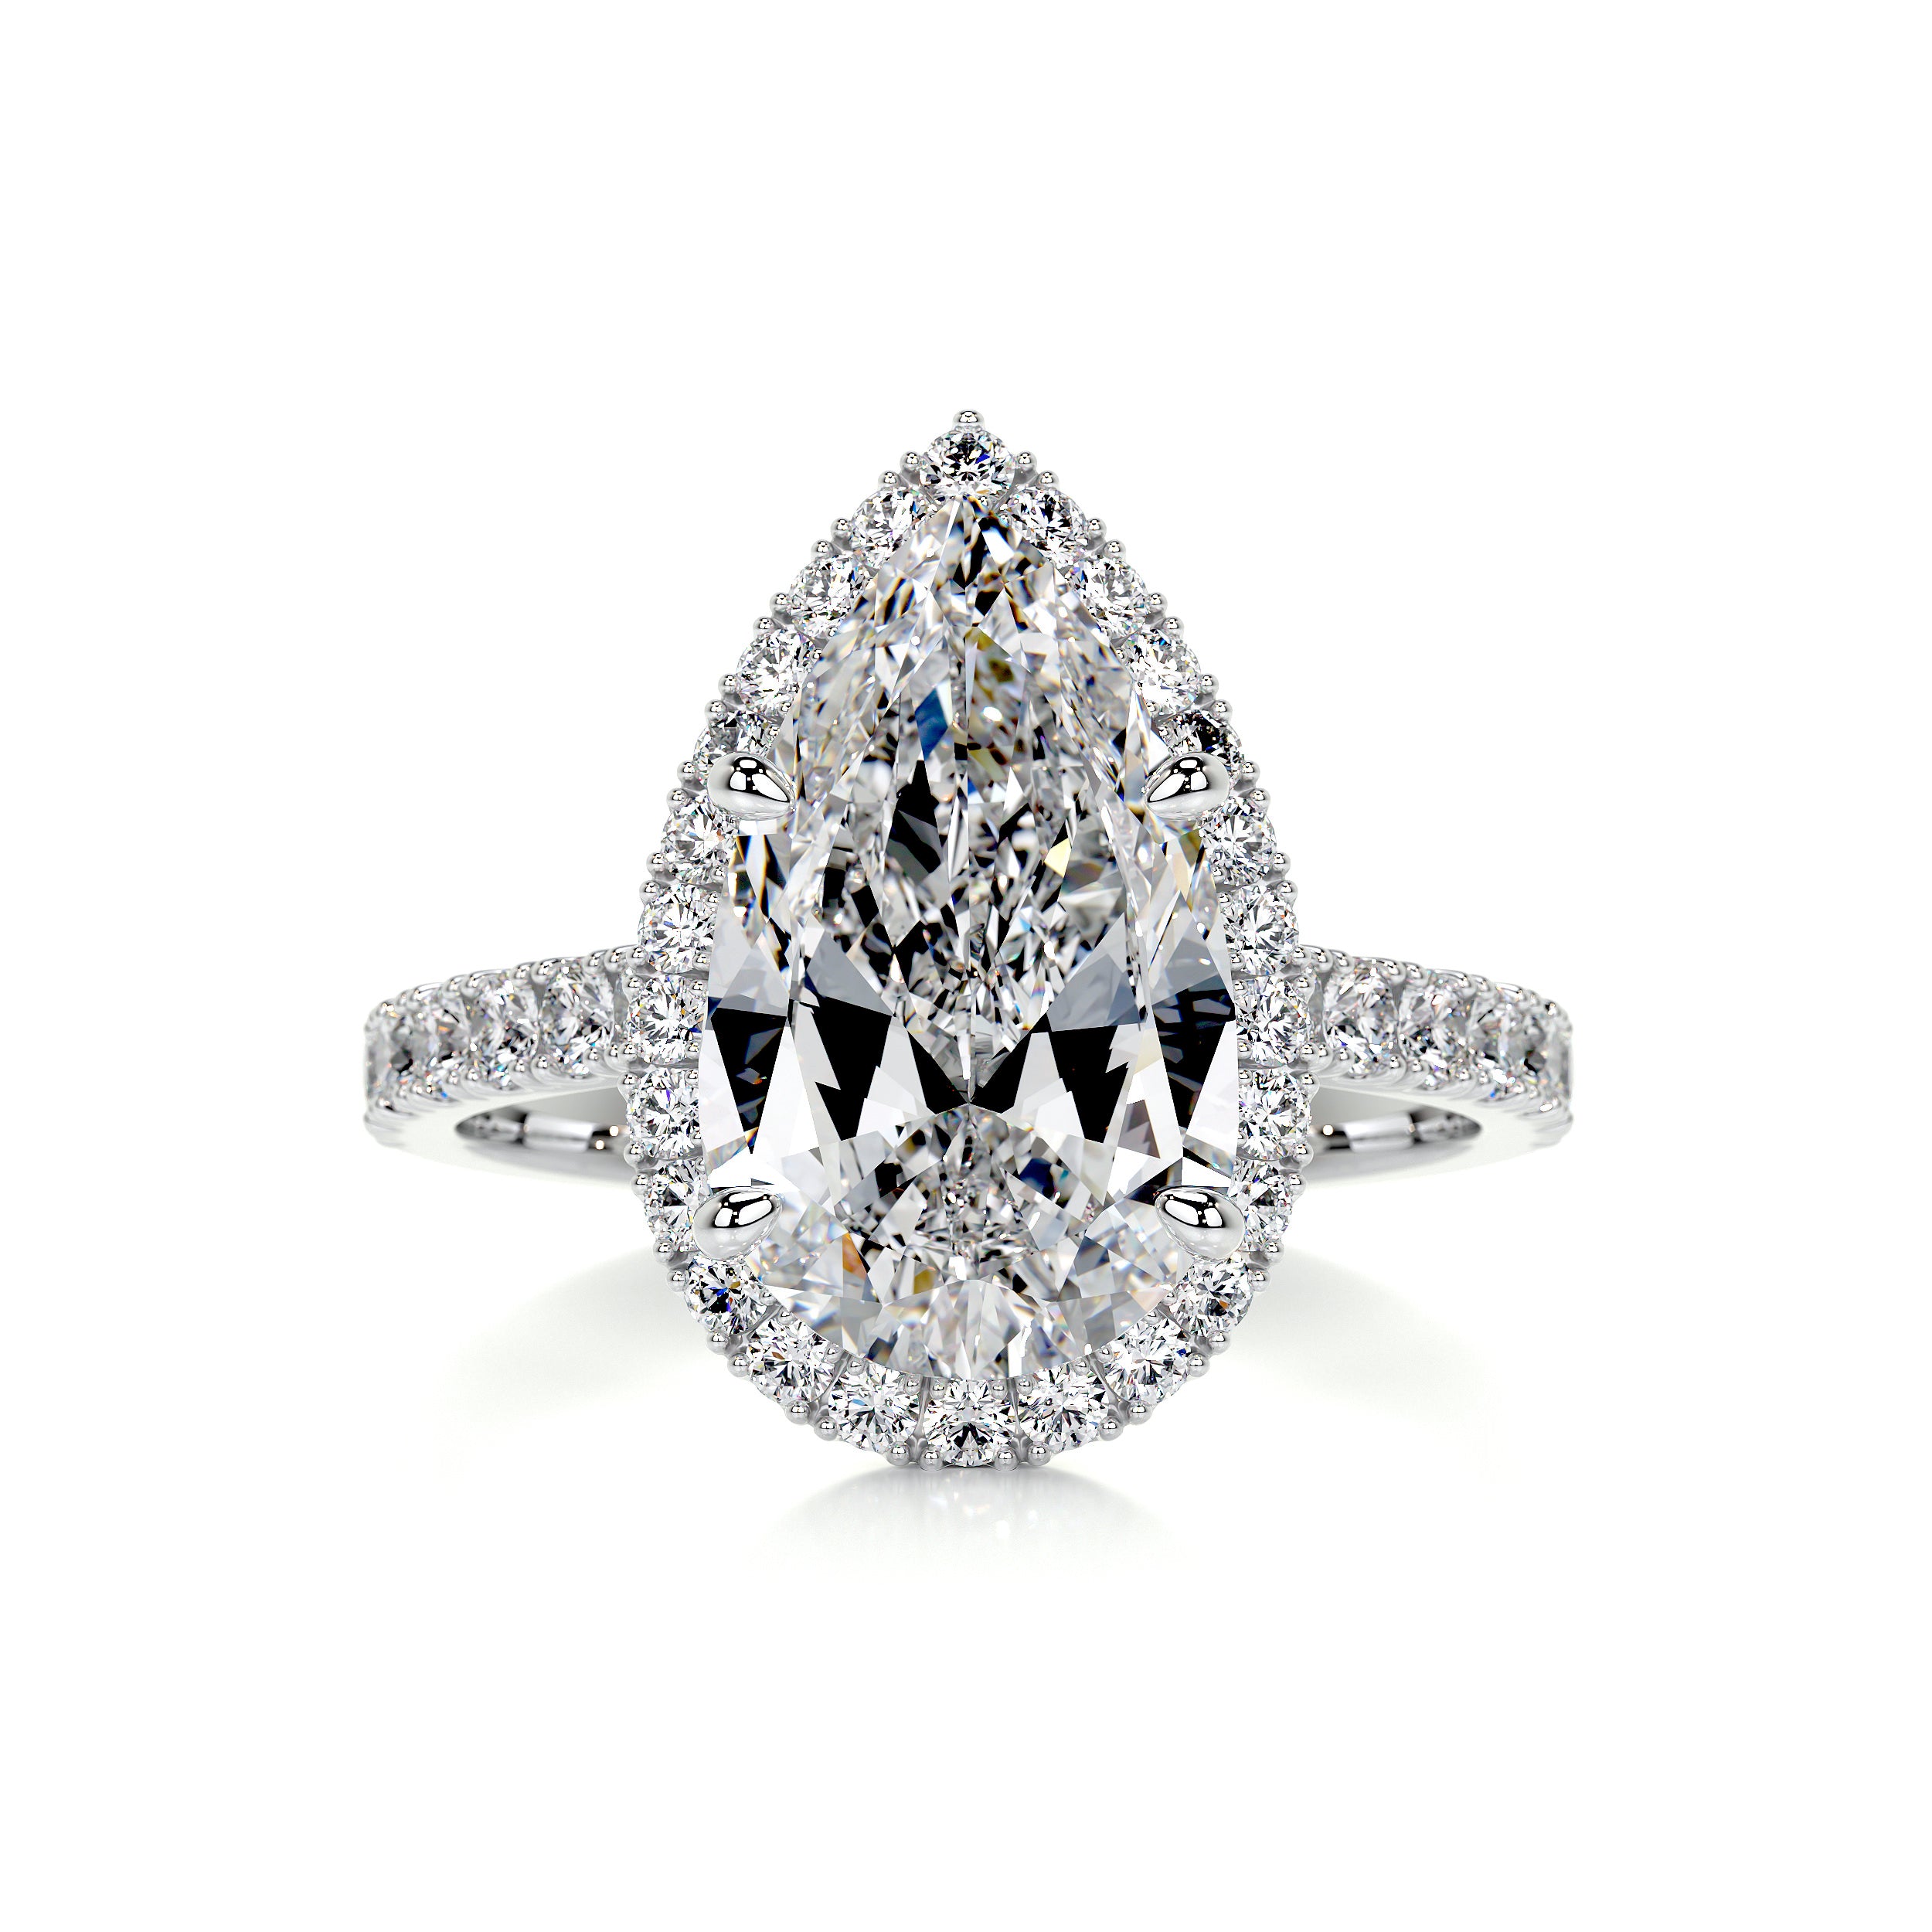 Sophia Diamond Engagement Ring   (3 Carat) -Platinum